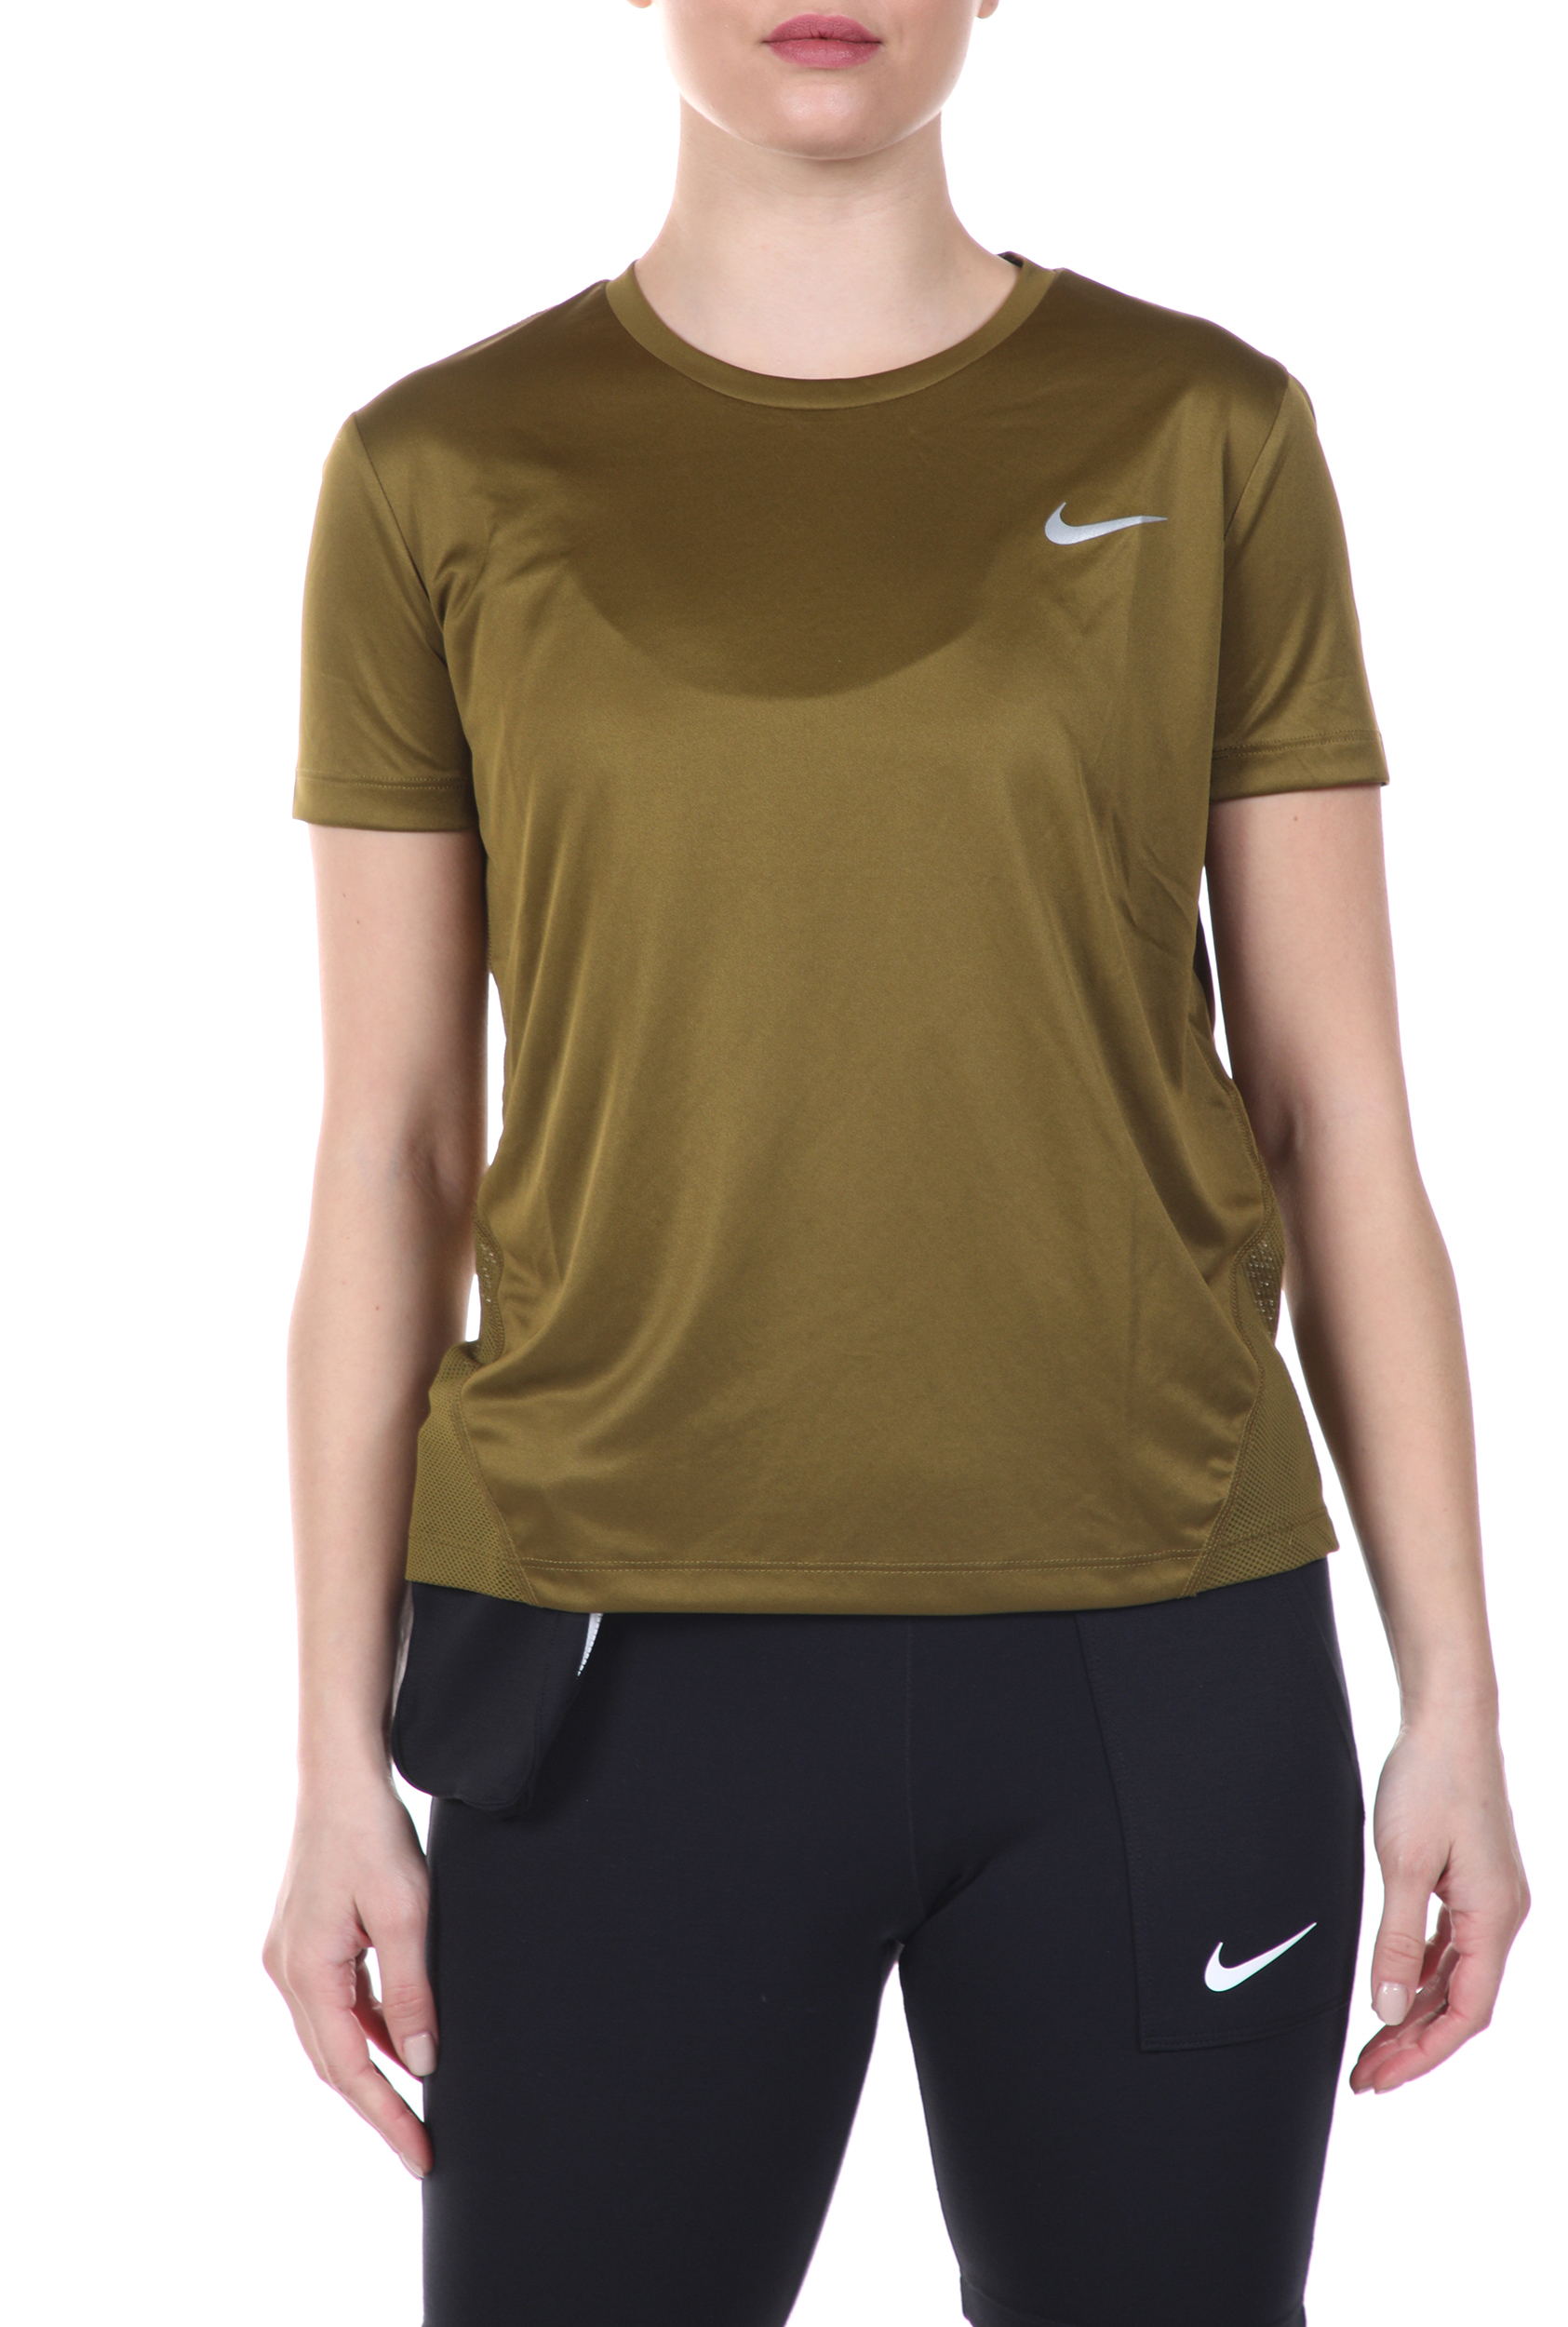 Γυναικεία/Ρούχα/Αθλητικά/T-shirt-Τοπ NIKE - Γυναικεία μπλούζα NIKE MILER TOP SS λαδί